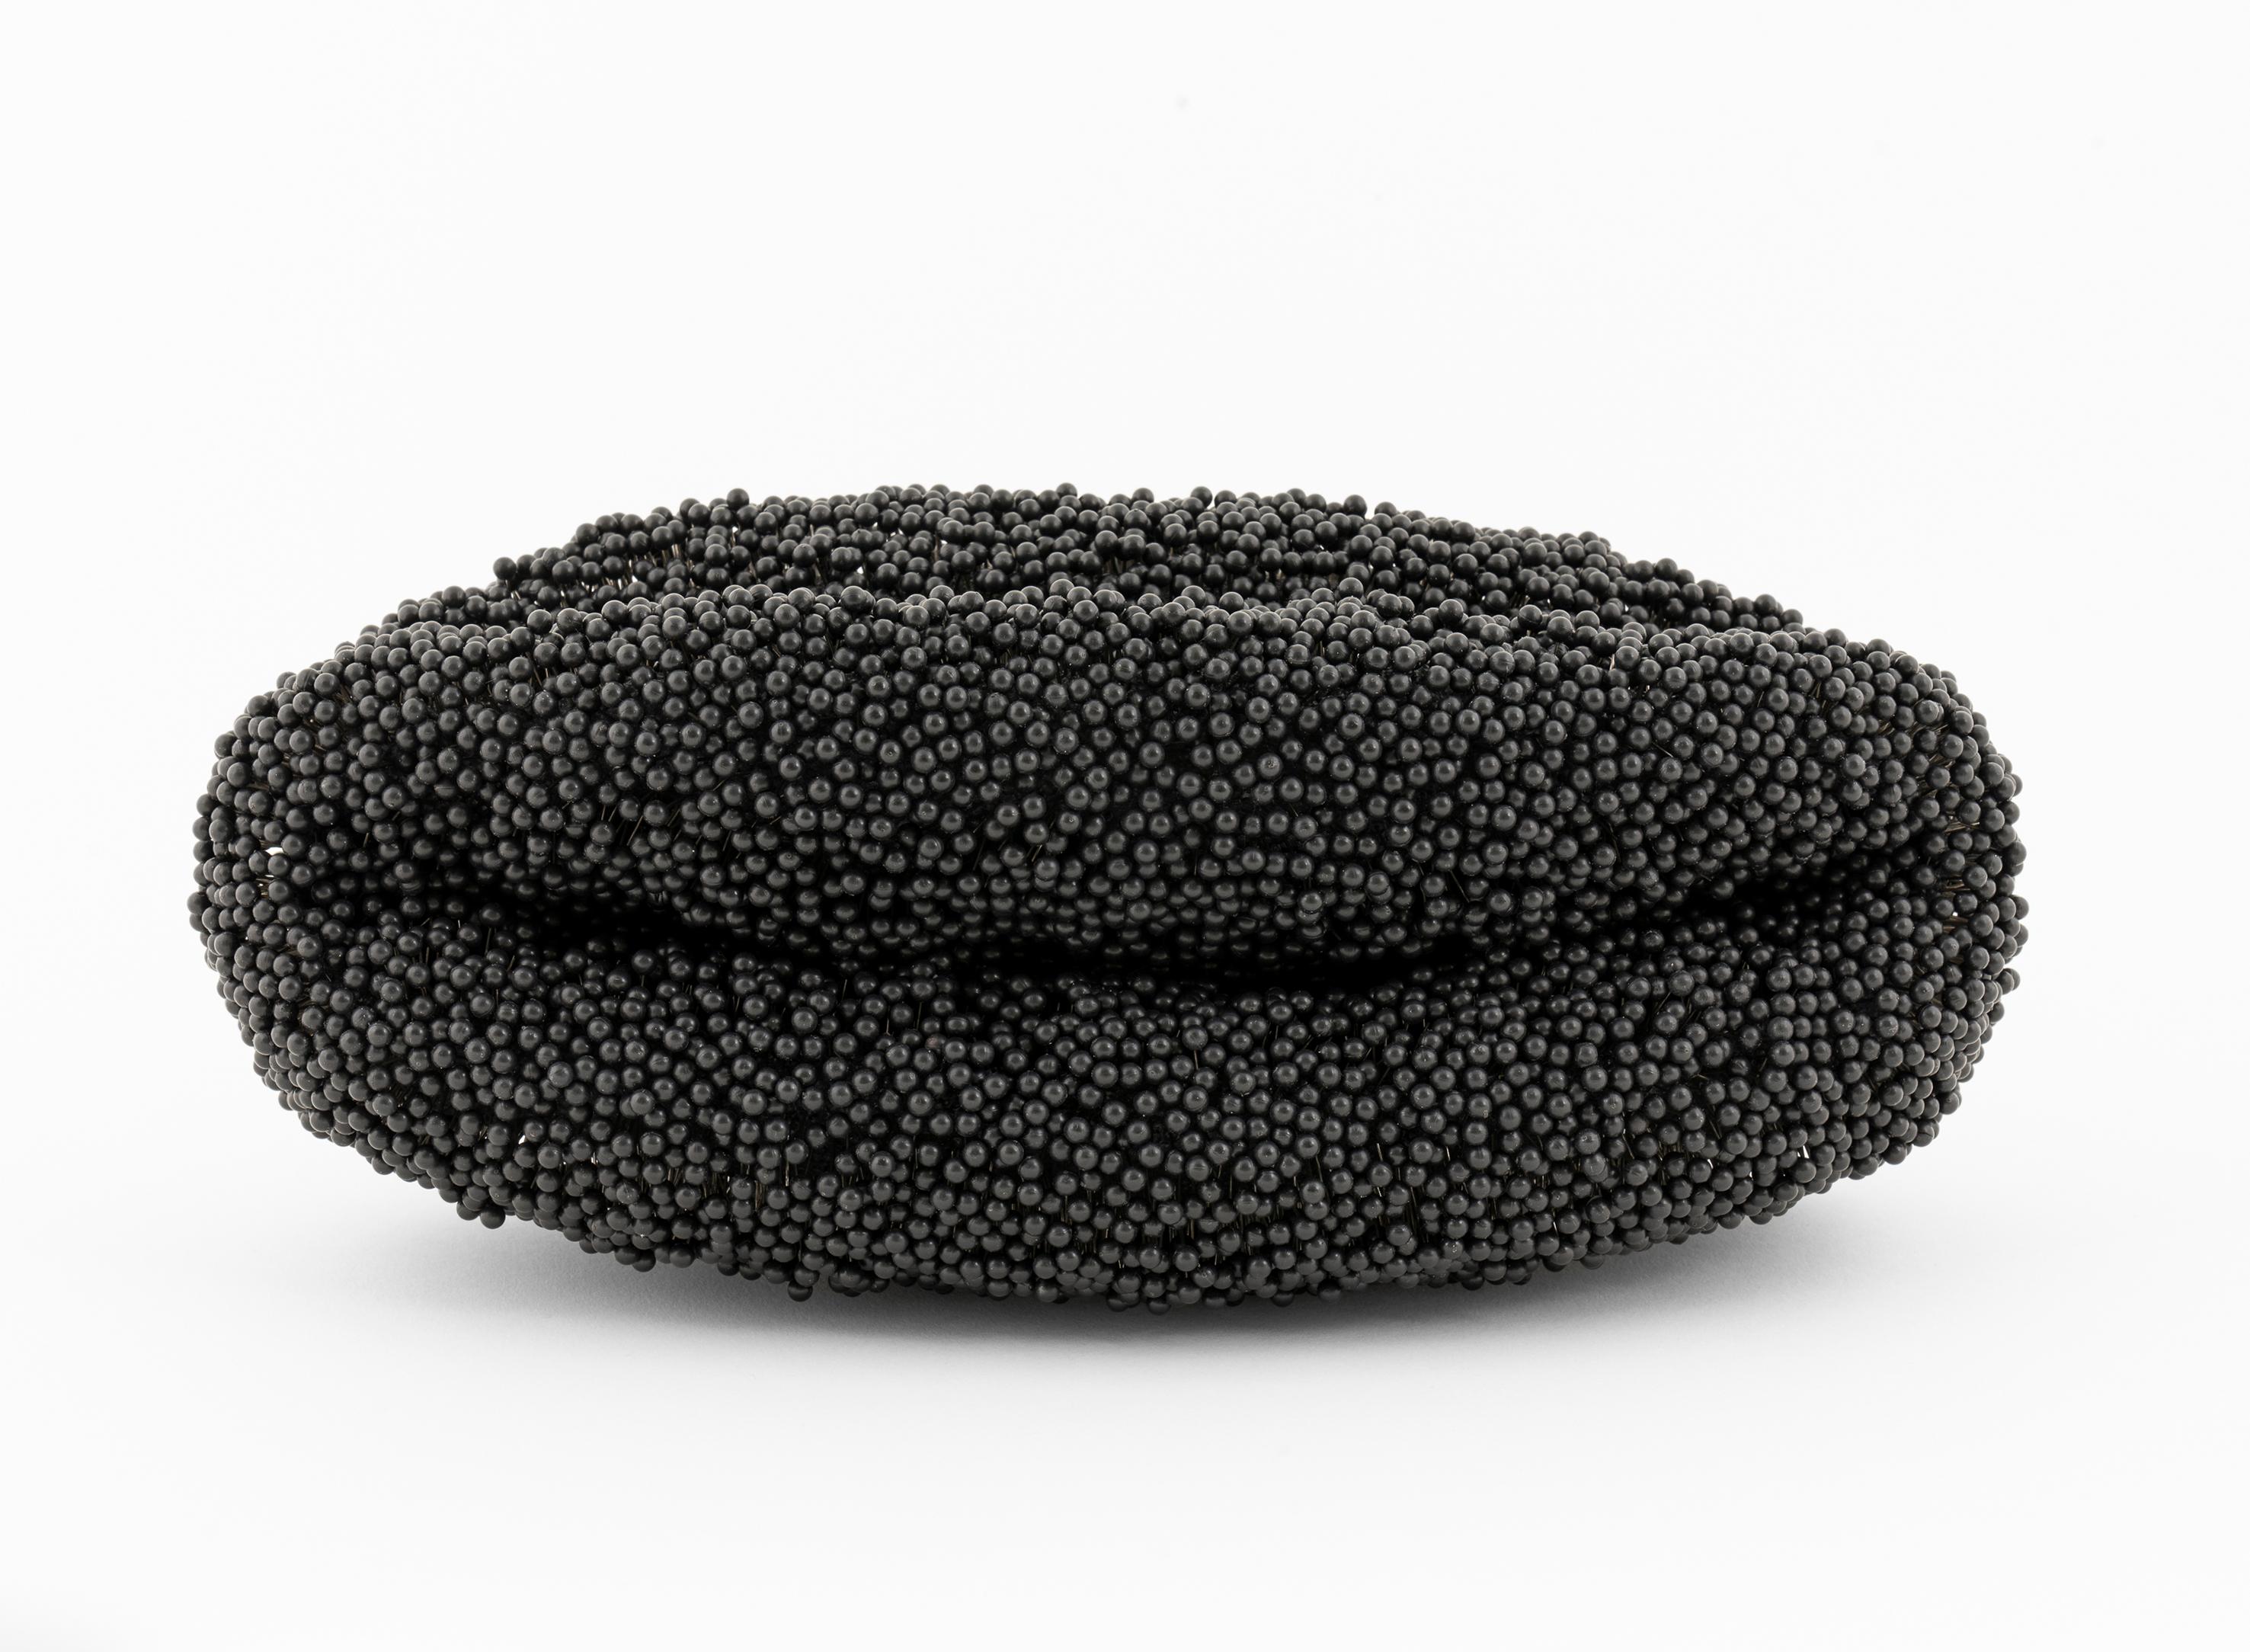 Black Hole - Sculpture by Petr Pavlik